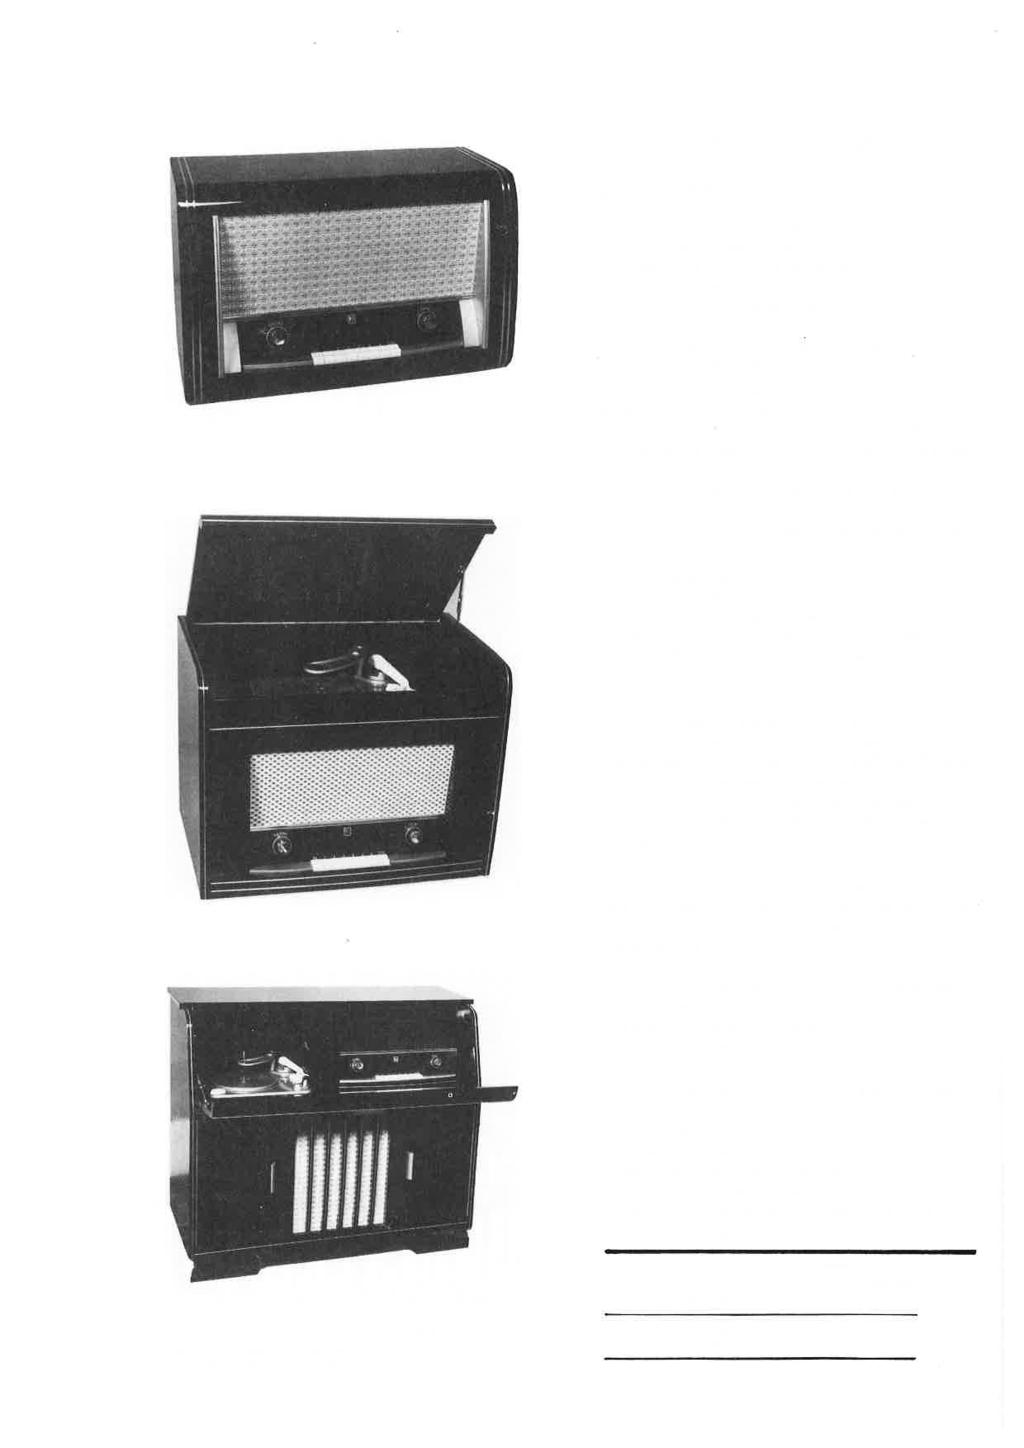 Dit distributienet met ontvangst- en zendinstallatie werd uitgewerkt door ingenieur A. Somerhausen (fig. 5).